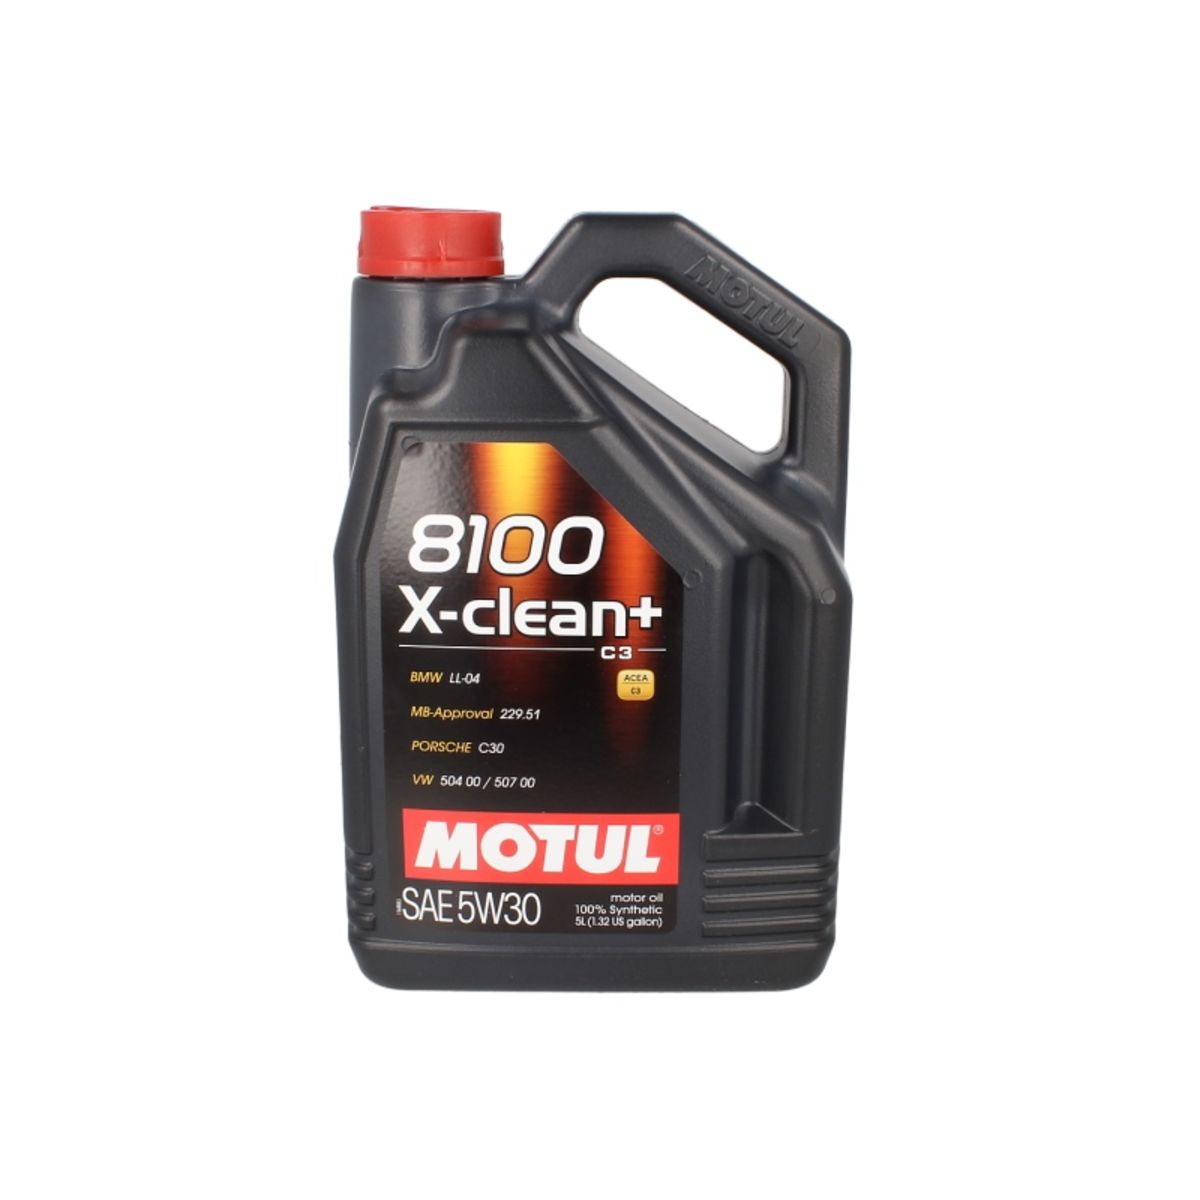 Olej syntetyczny MOTUL 8100 Xclean+ 5W30, 5 litrów